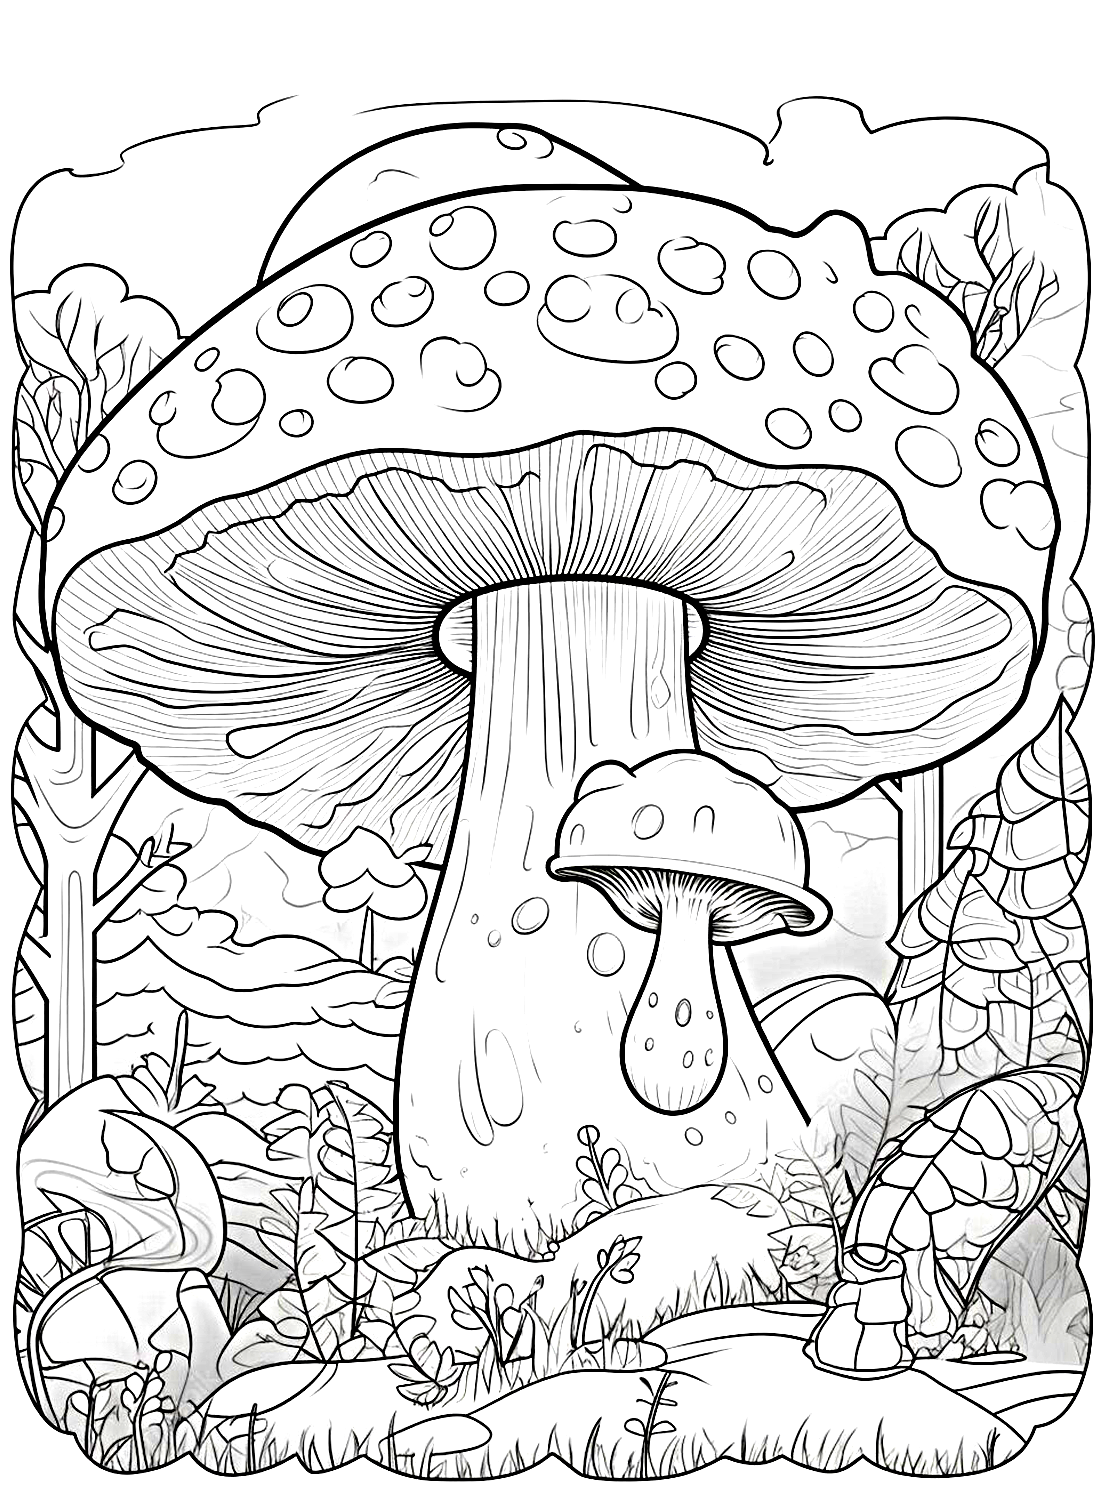 Une photo de champignon géant de Mushroom